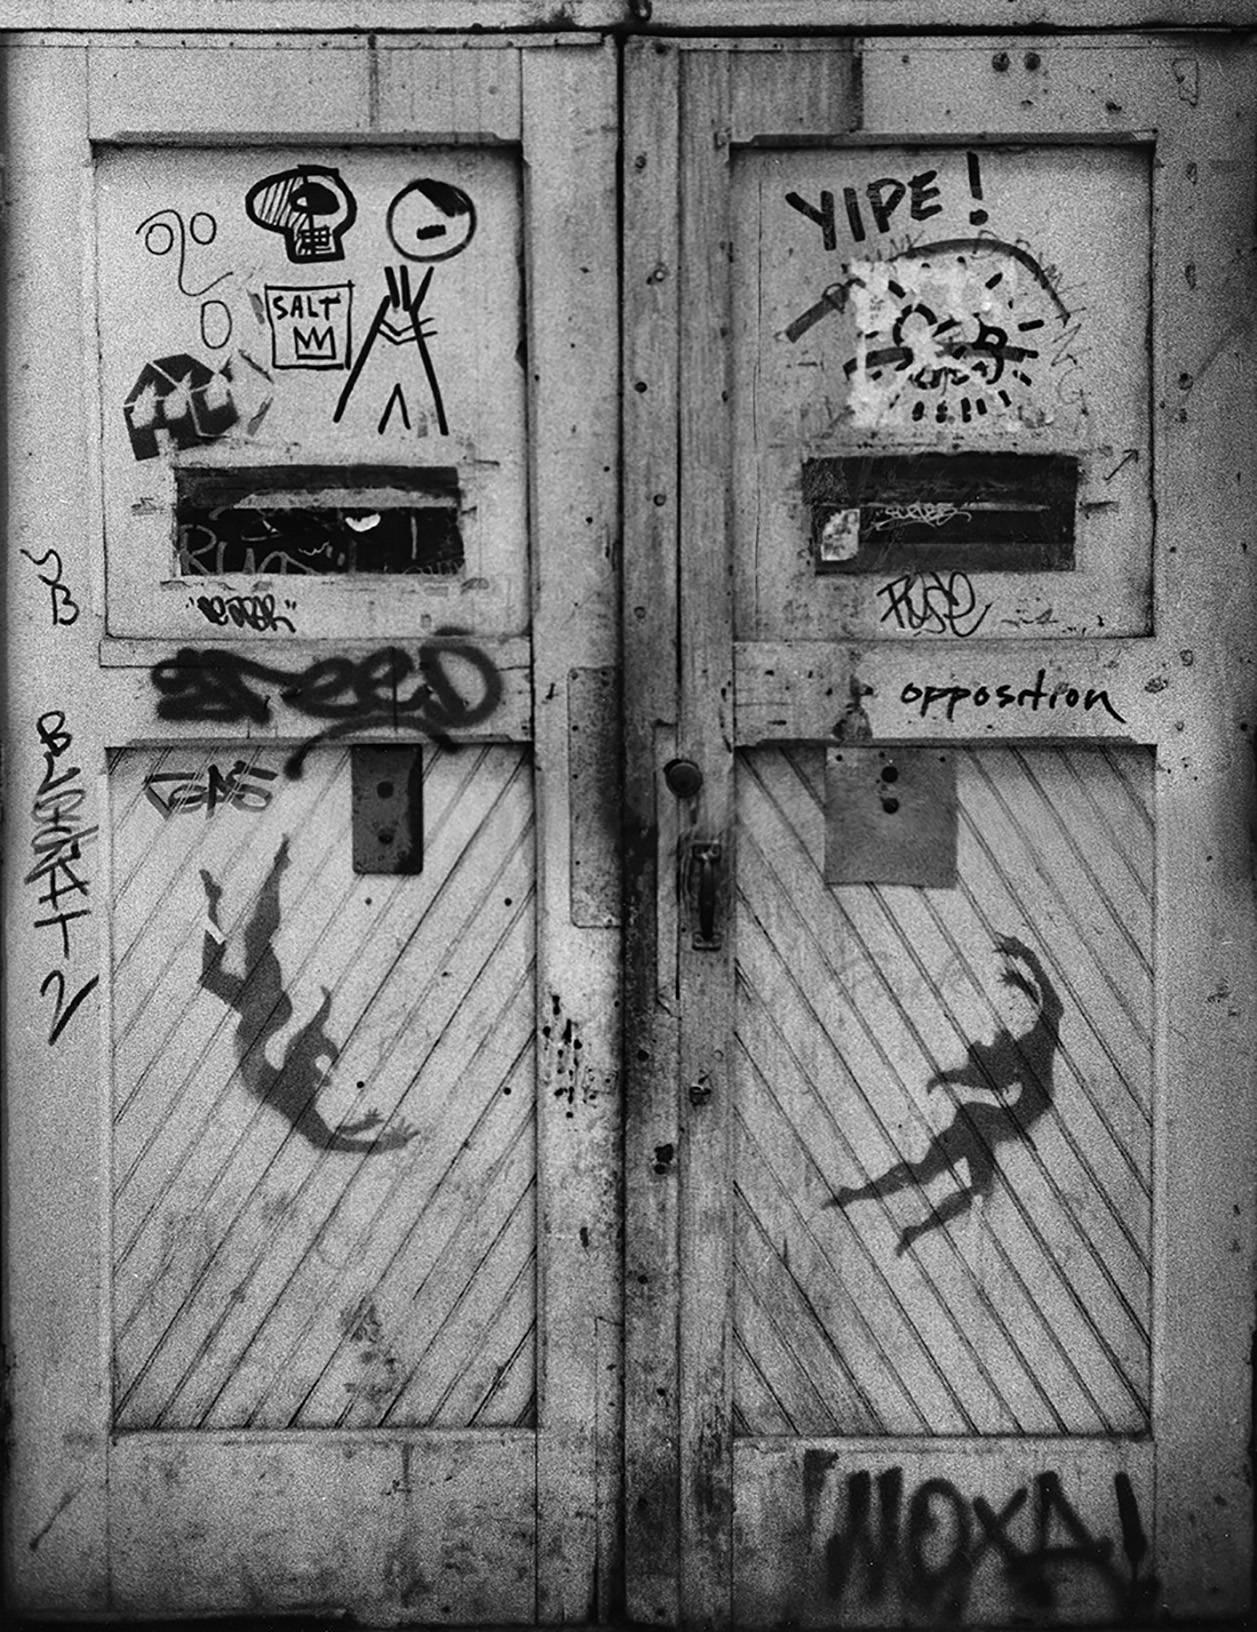 Basquiat, Keith Haring NY Graffiti Photo 1980 (SAMO)  - Print by Fernando Natalici